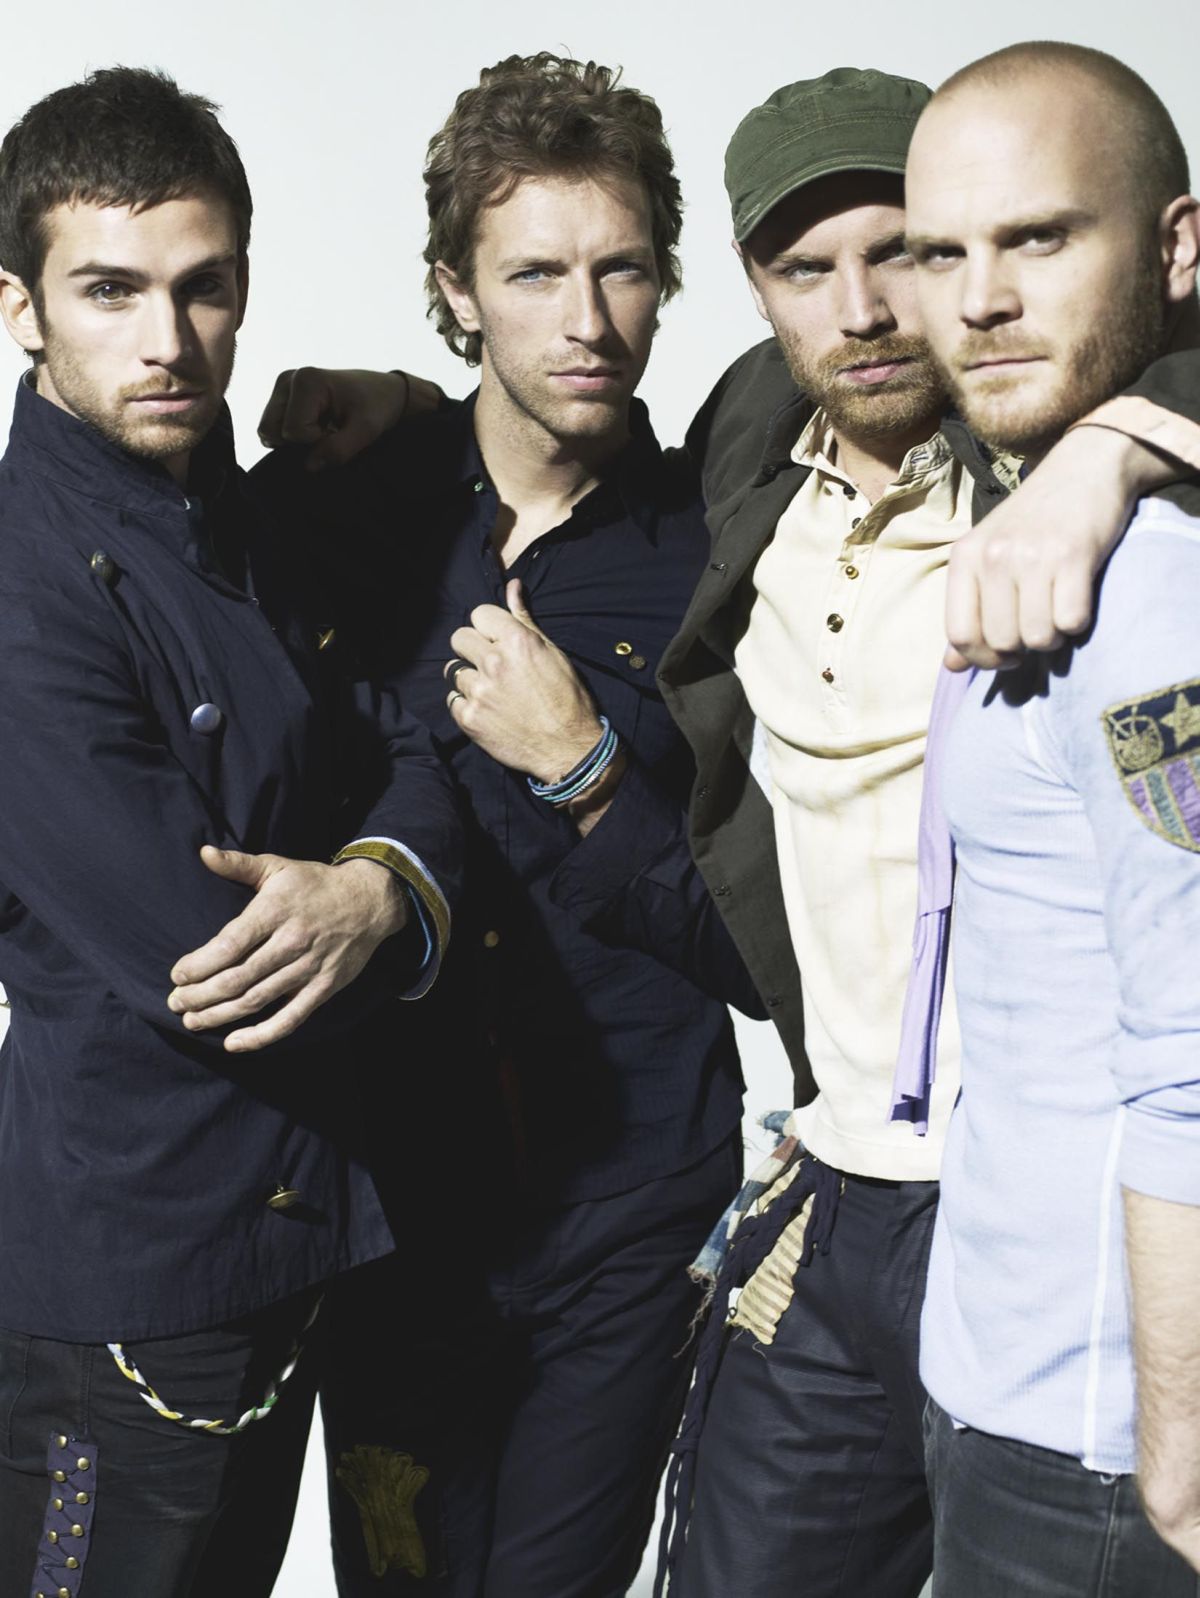 Coldplay zagrają na Stadionie Narodowym